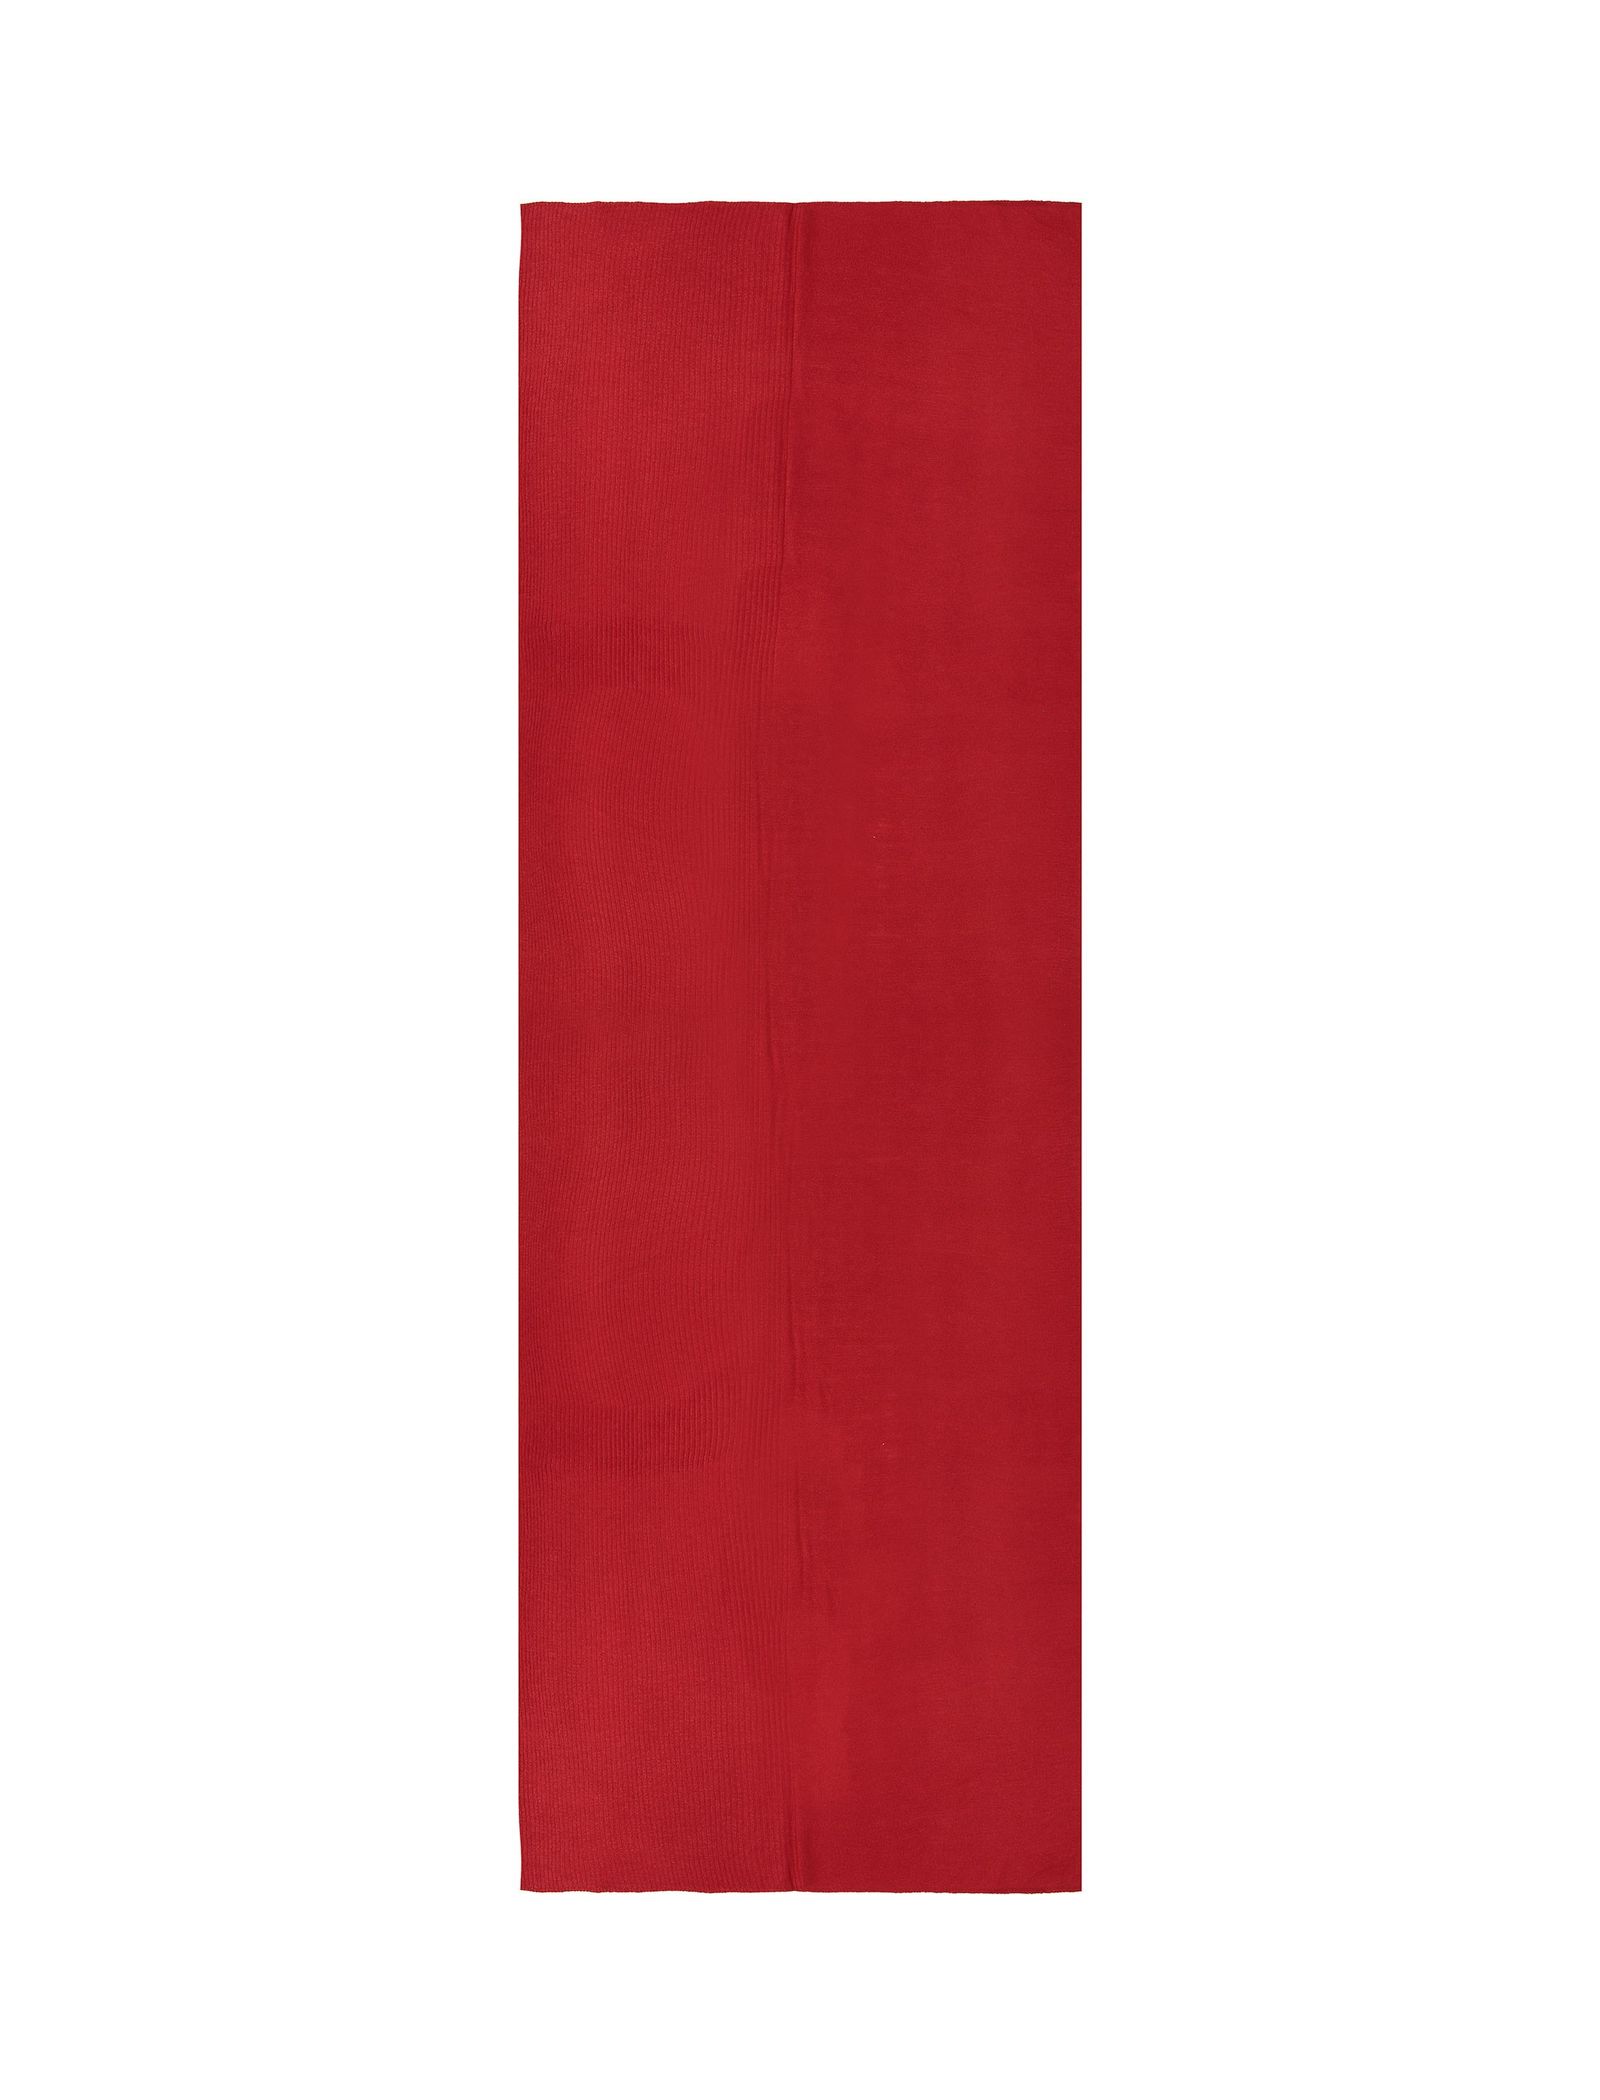 شال ساده زنانه - زیبو تک سایز - قرمز - 2